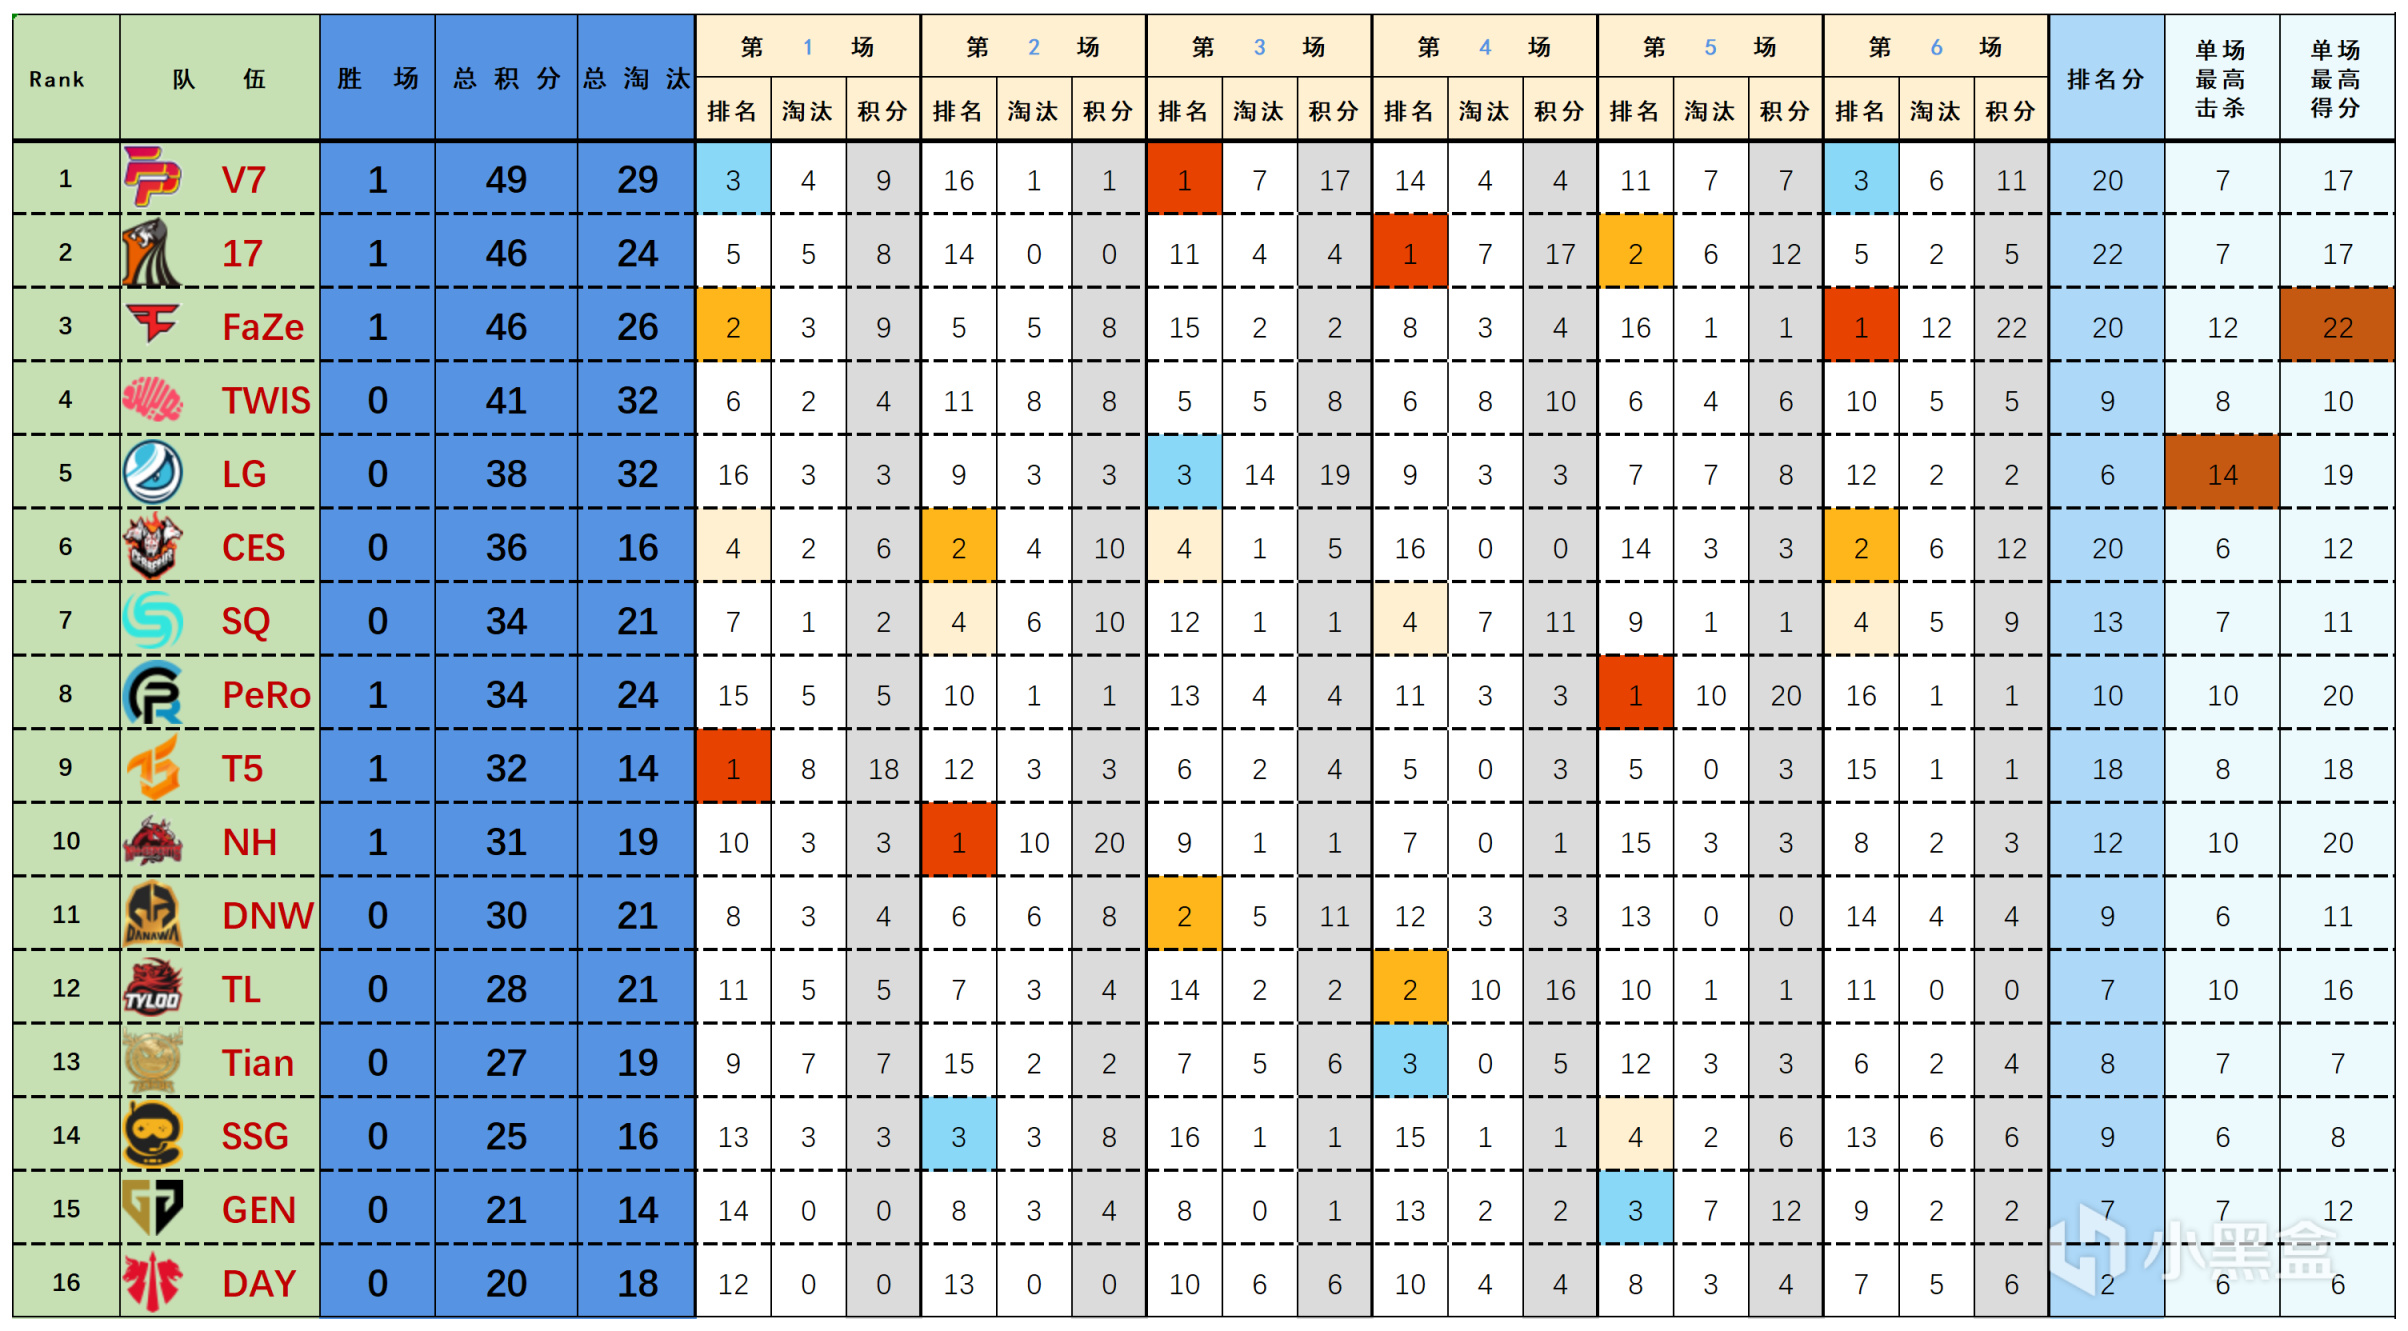 【数据流】23PGC决赛D1,V7 49分今日第一,LG_Snakers战神12淘汰-第1张